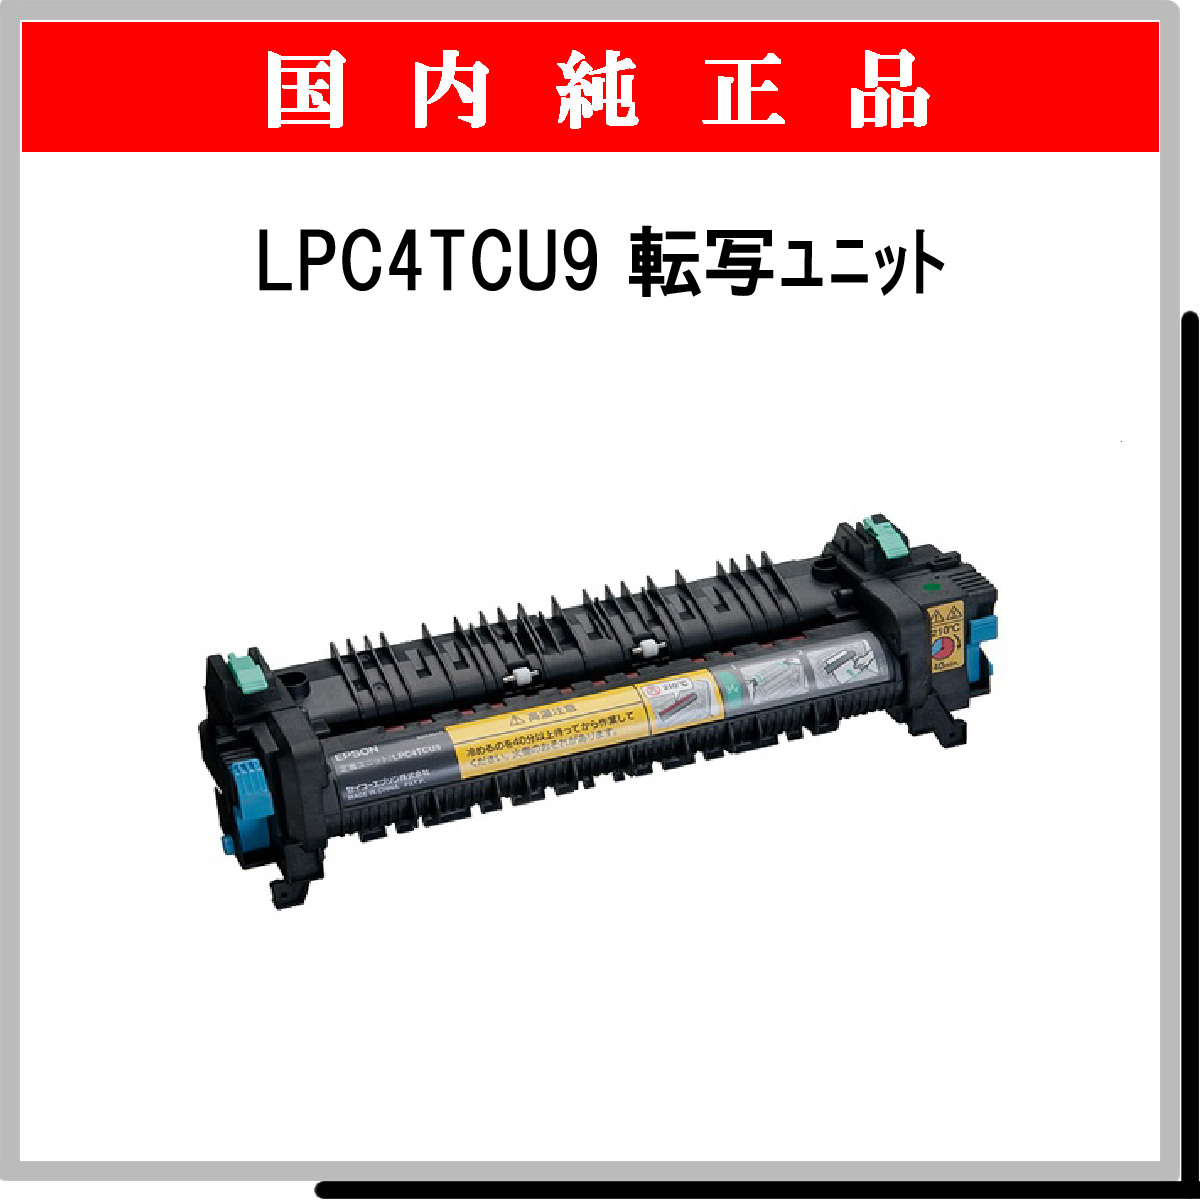 EPSON 定着ユニット LPC4TCU9 100,000ページ